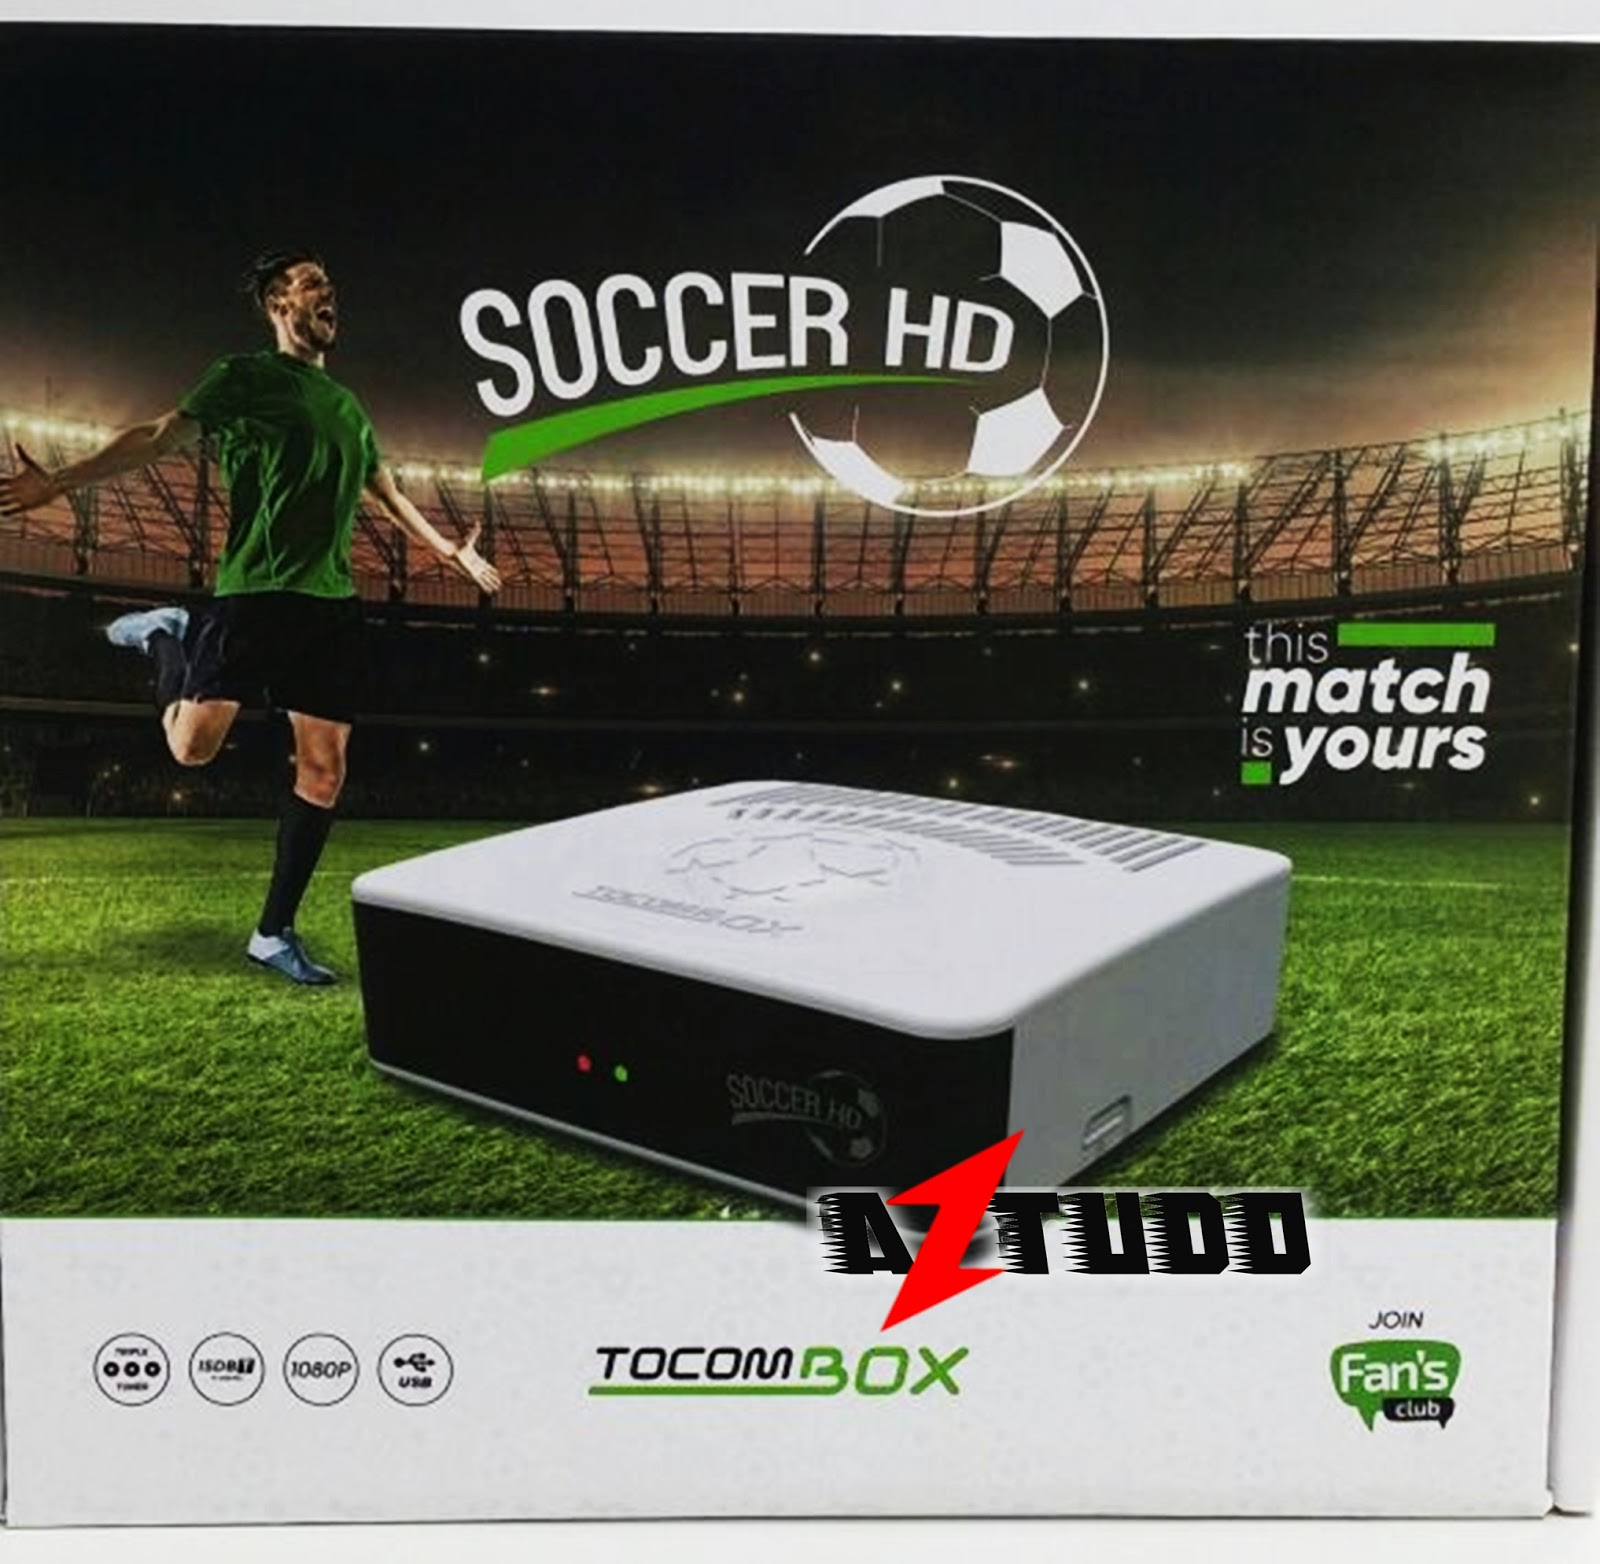 Tocombox Soccer HD Lançamento já Chegou no Mercado!